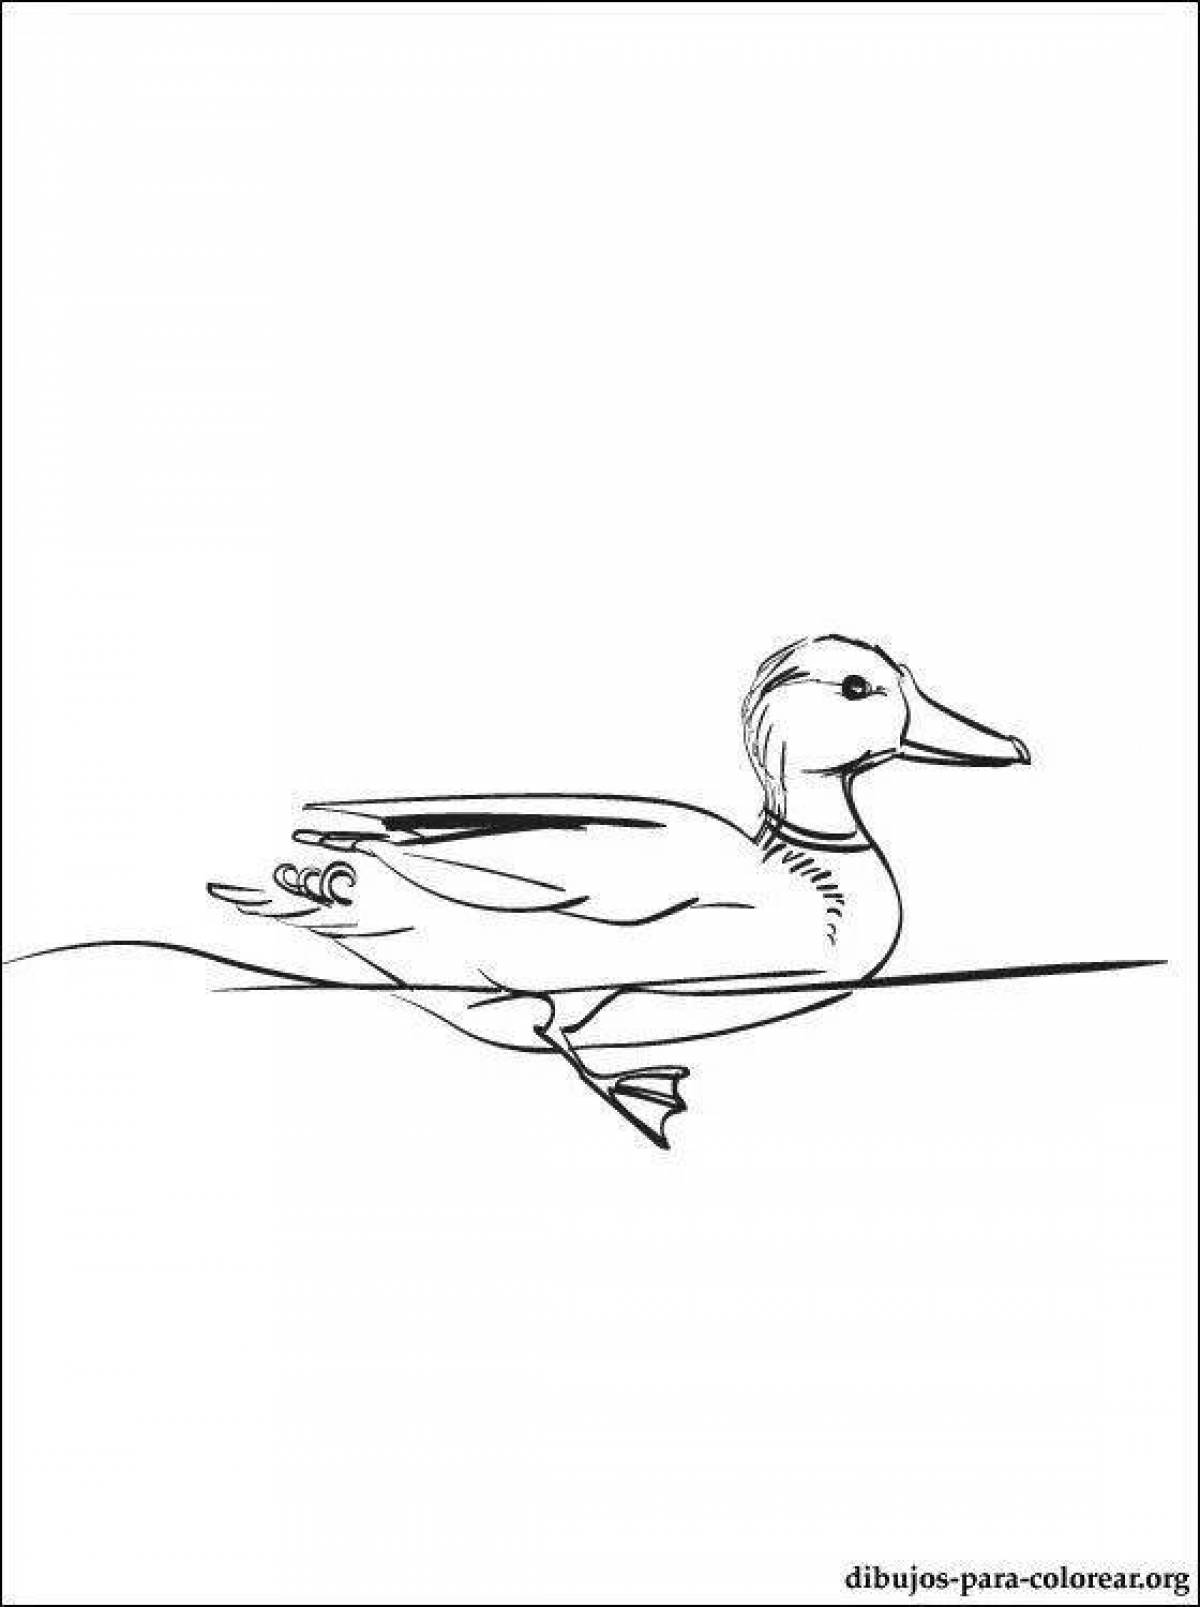 Wonderful lanfan duck coloring pages